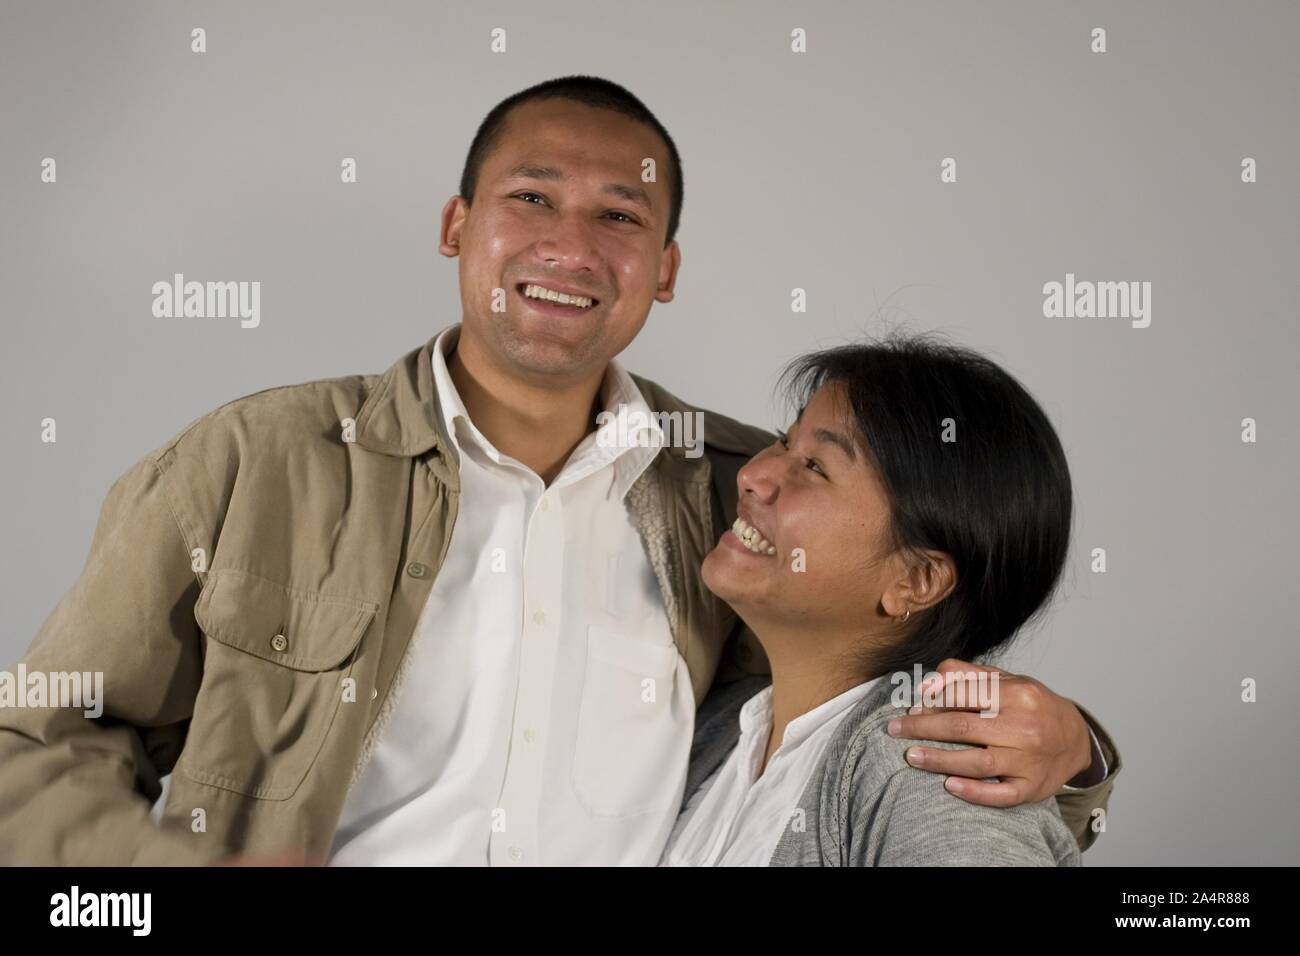 Modell Freigabe Nr.: 040. aradhana Gurung und Suman Shrestha sind zusammen für 2 Jahre gewesen und Plan in einem Jahr zu heiraten. Ihnen wird ein intercaste Ehe sein, dass langsam immer mehr gemeinsame in Nepali städtischen Einstellungen, dennoch stellt seine sozialen Herausforderungen. November 29, 2007, Kathmandu, Nepal. Stockfoto